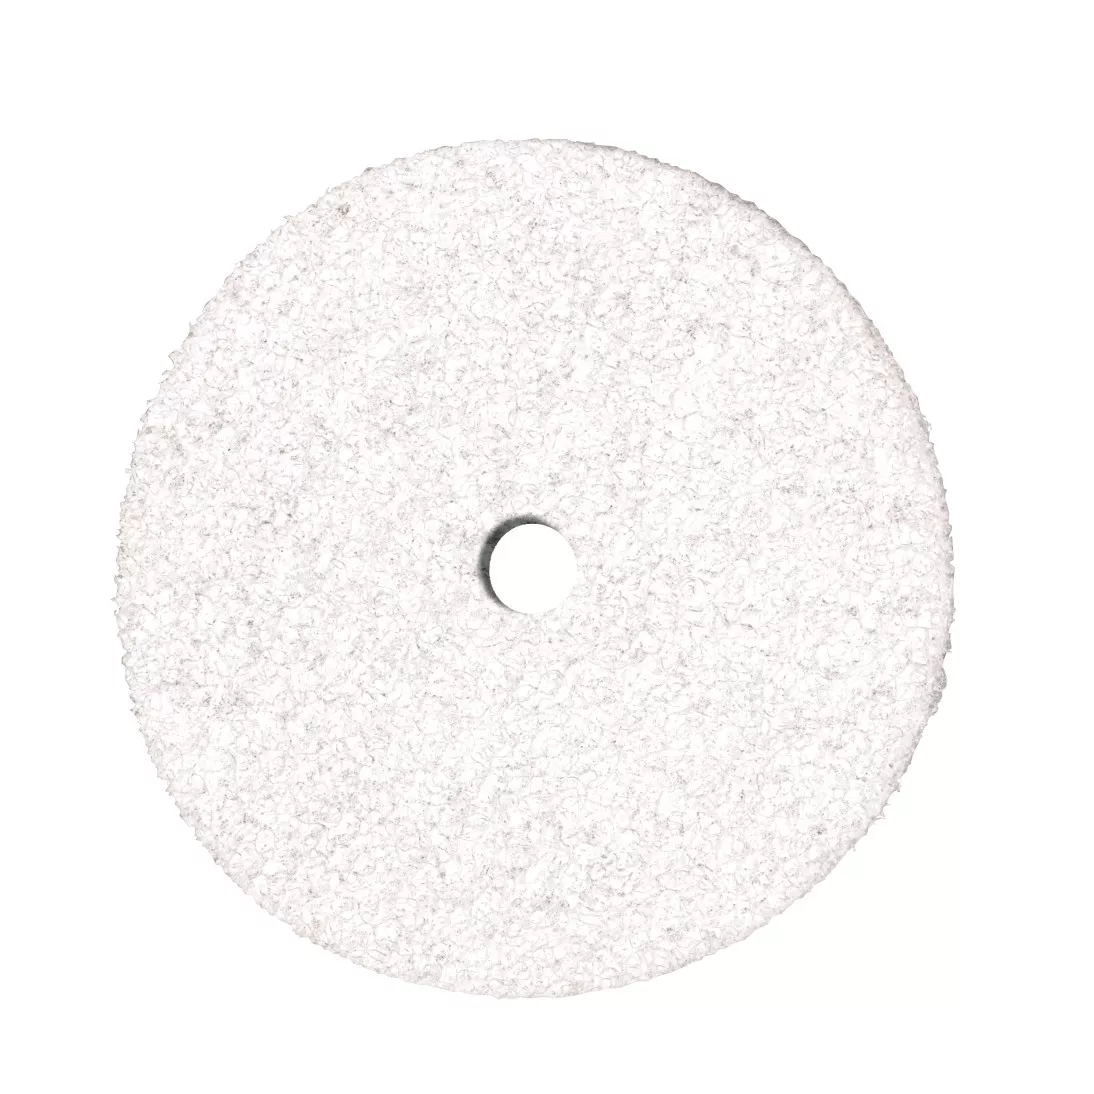 Scotch-Brite™ Clean and Finish Disc, CF-DC, Talc, 6 in x 1/4 in, 100
ea/Case